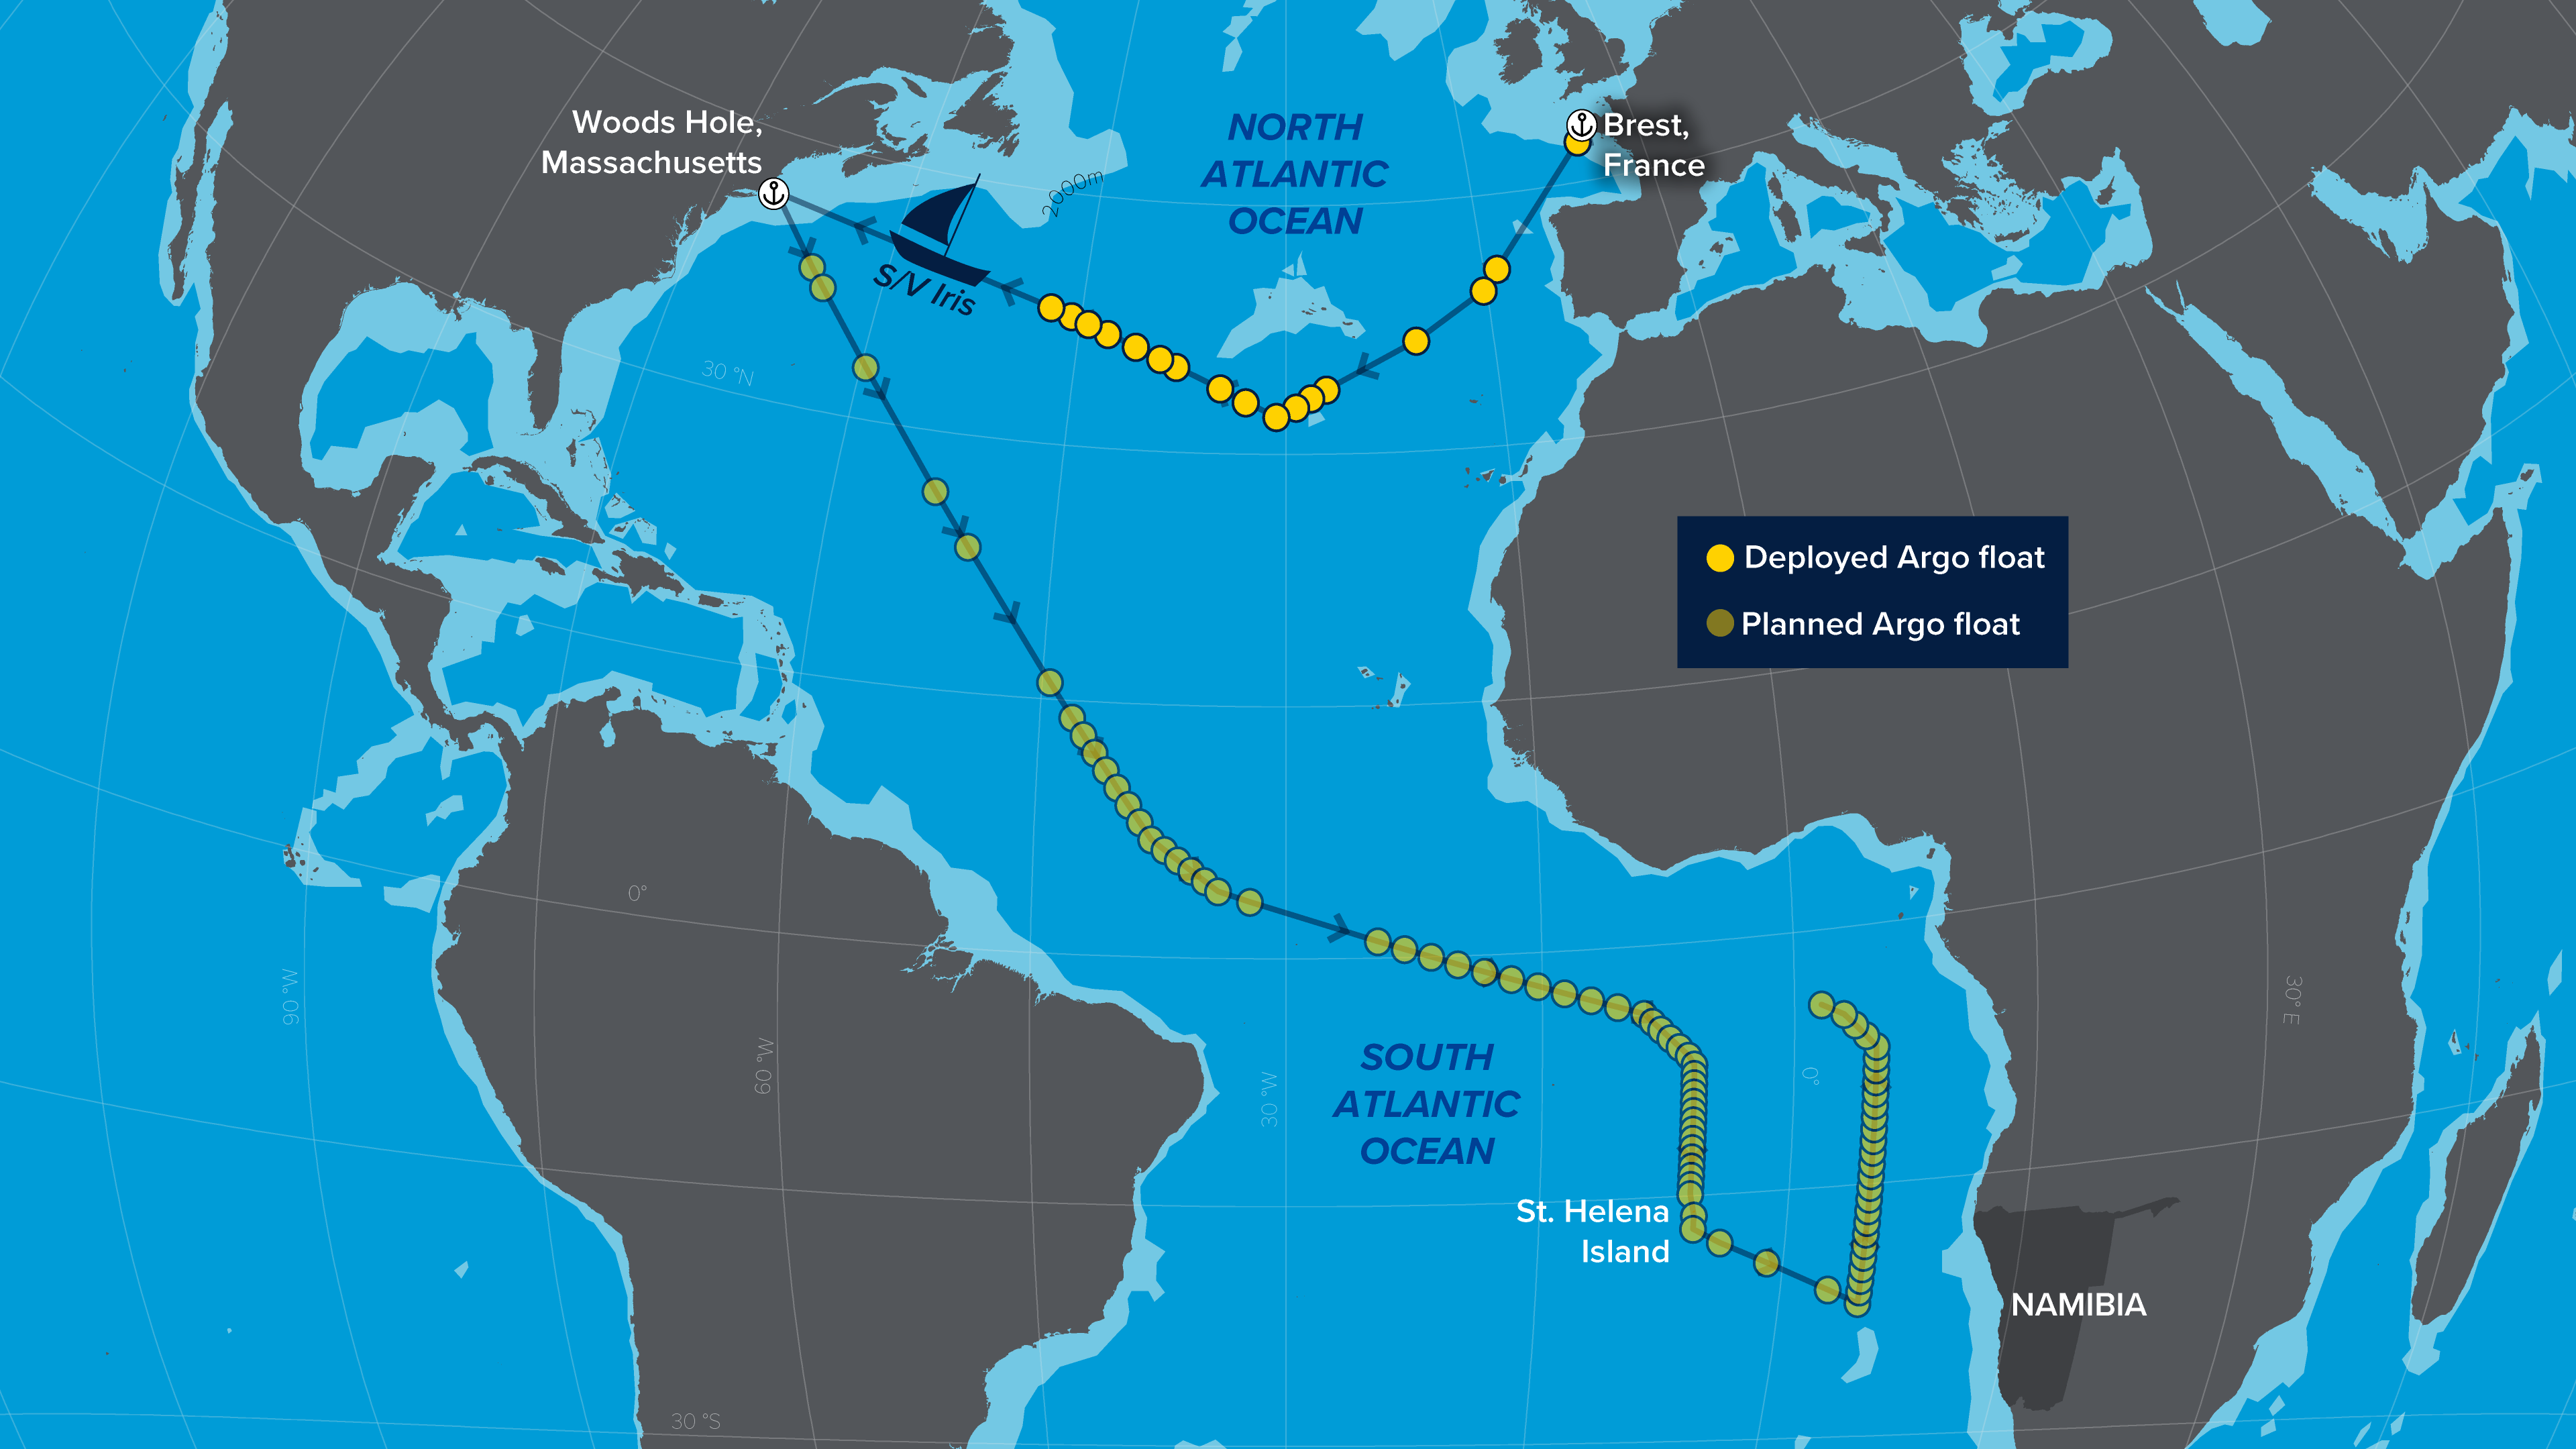 Le voilier français Iris est arrivé à Woods Hole, dans le Massachusetts, après un long voyage de trois semaines à travers l'océan Atlantique où 17 flotteurs Argo ont été déployés à l'appui de la recherche et des prévisions océaniques, météorologiques et climatiques.  À Woods Hole, l'équipage du Blue Observer a récupéré les flotteurs supplémentaires pour la deuxième étape du voyage dans l'Atlantique Sud, en direction de l'île de Sainte-Hélène, au large des côtes de la Namibie.  Au cours de ce qui est l'une des plus grandes missions d'un voilier pour déployer des flotteurs de profilage, le cr